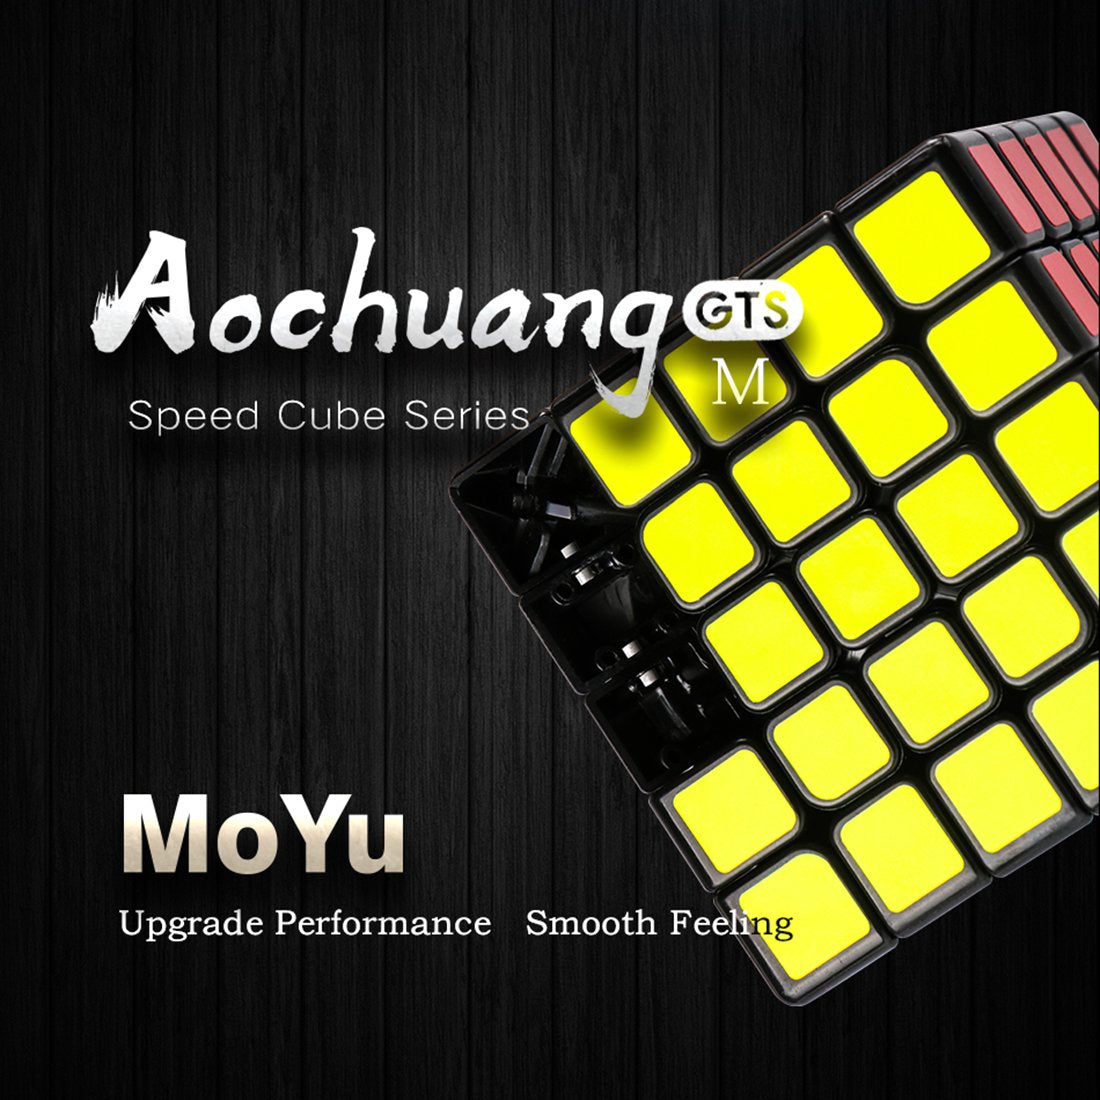 Yj8263 Moyu Aochuang Gts M 5X5 Magic Cube - Magnetic Version